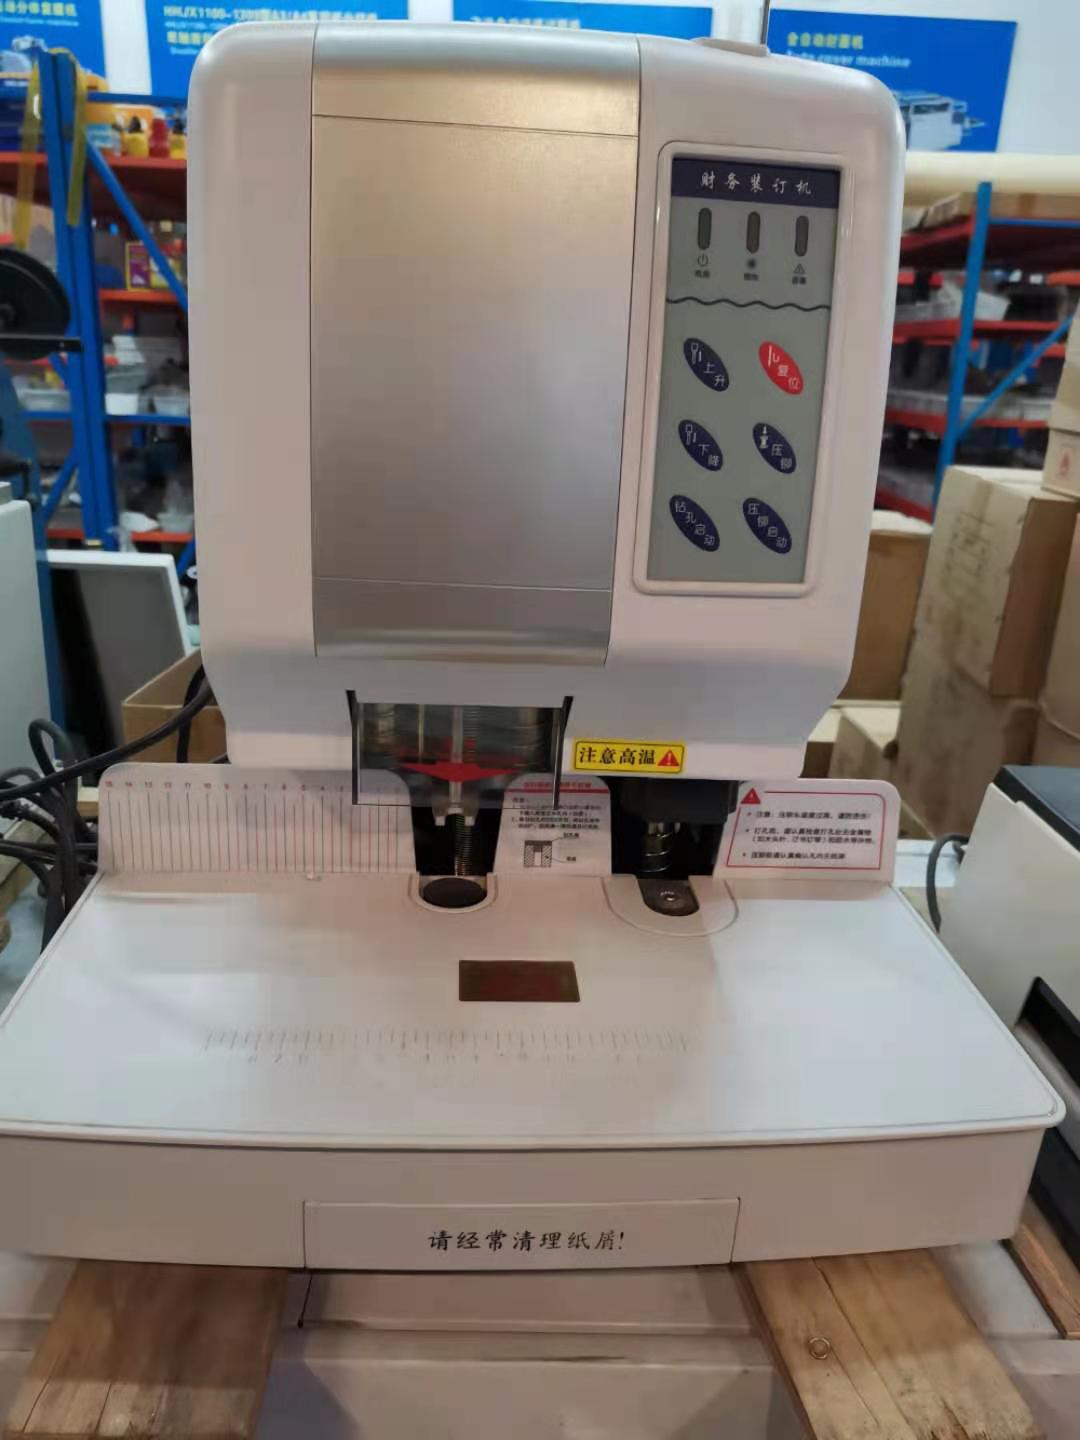 印刷机械装订机JY-502Z自动打孔铆管装订机产品图